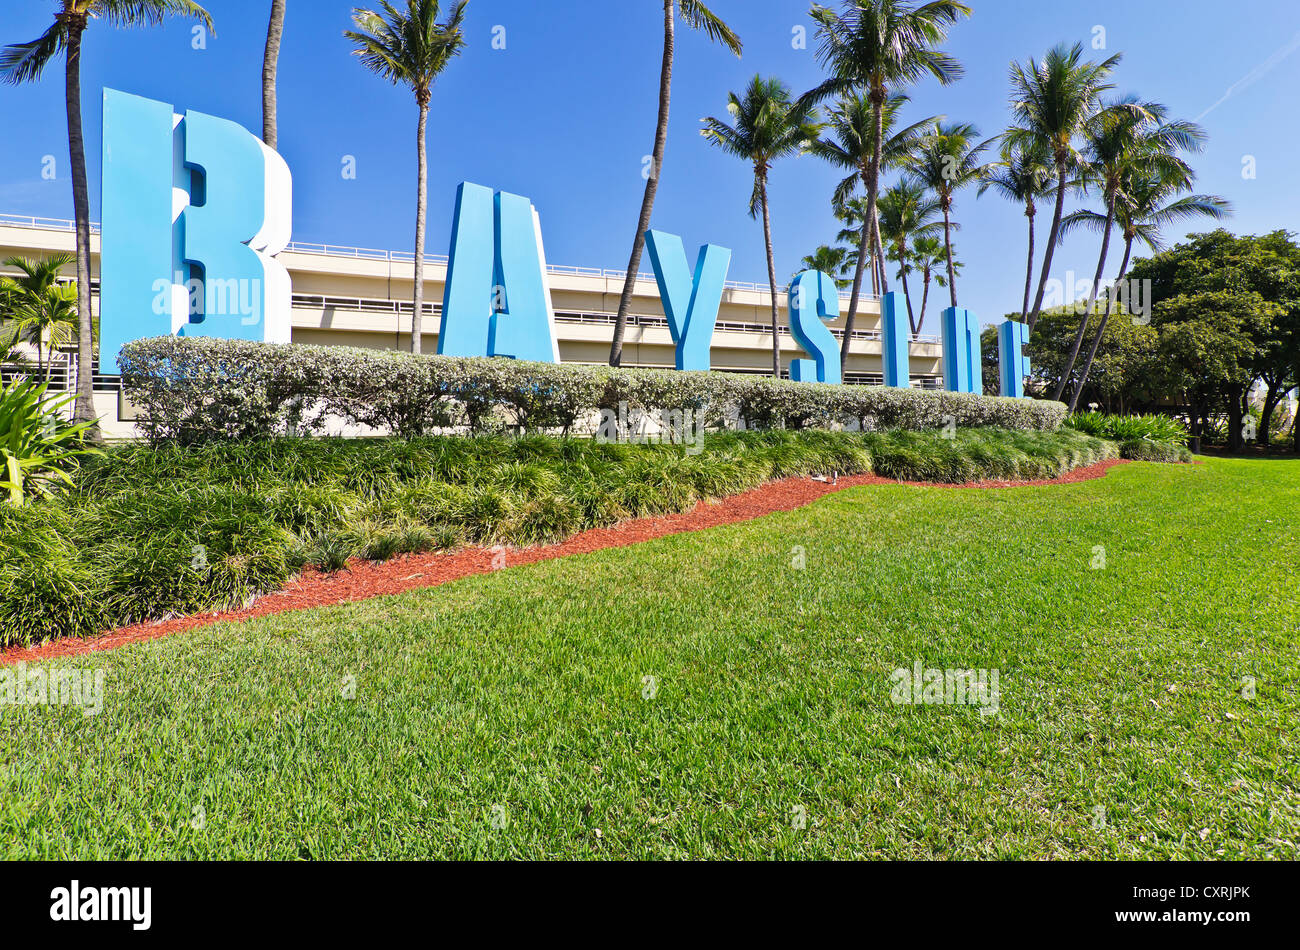 Bayside signage on Bayside Marketplace, Miami, Florida, USA Stock Photo